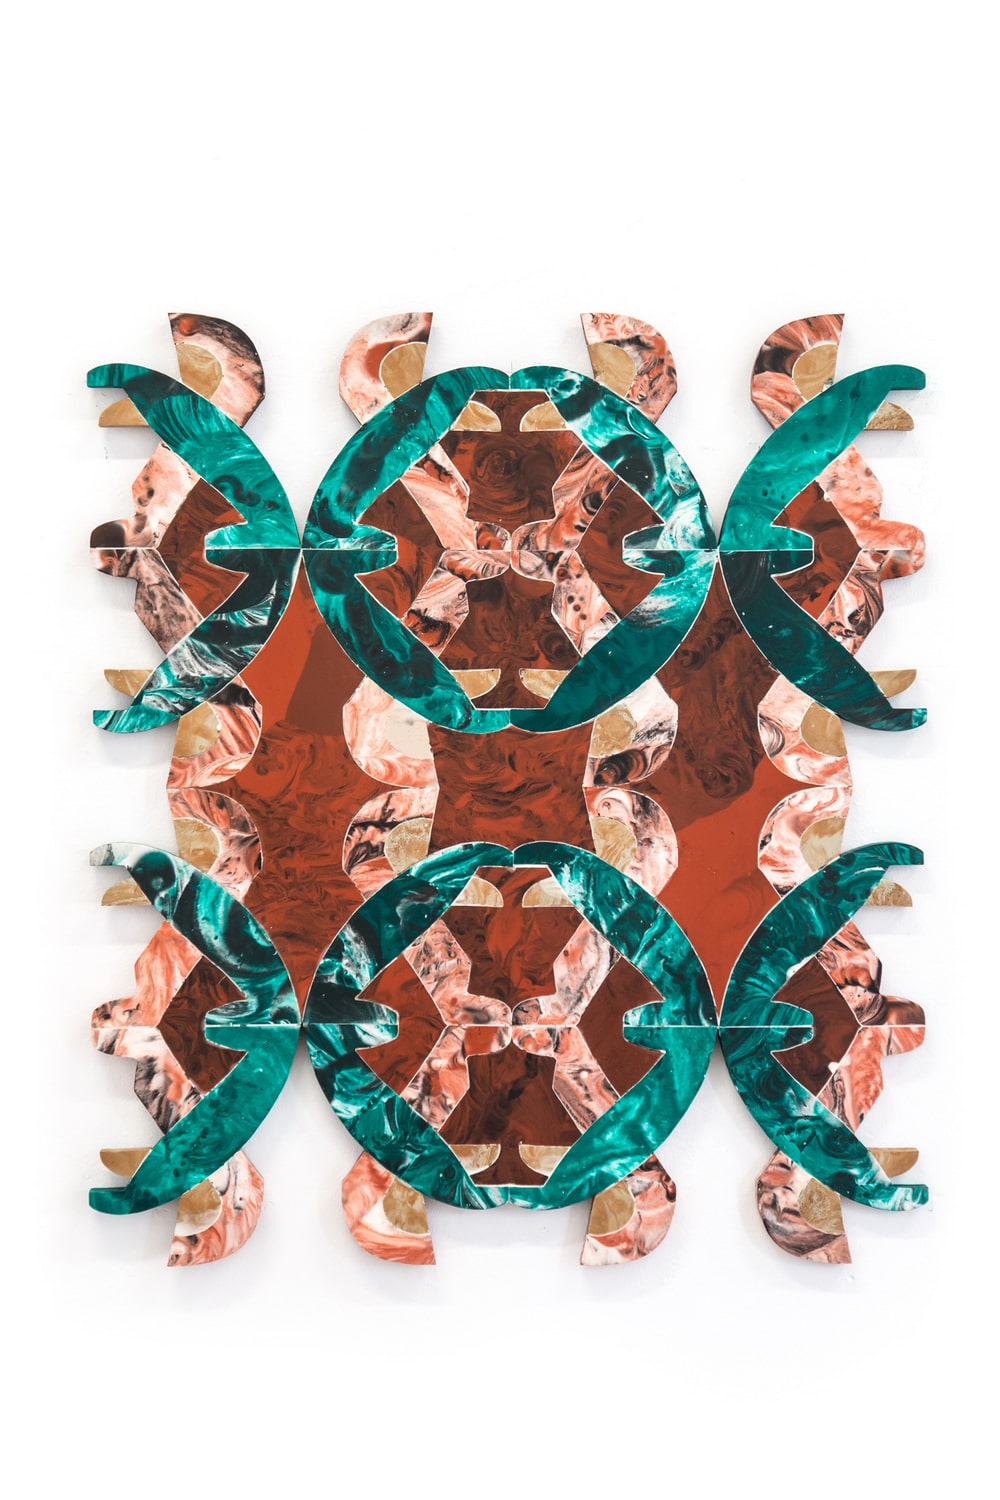 reprodukcja pracy - intarsja polimerowa przedstawiająca abstrakcyjną formę w kolorystyce brązu i zieleni